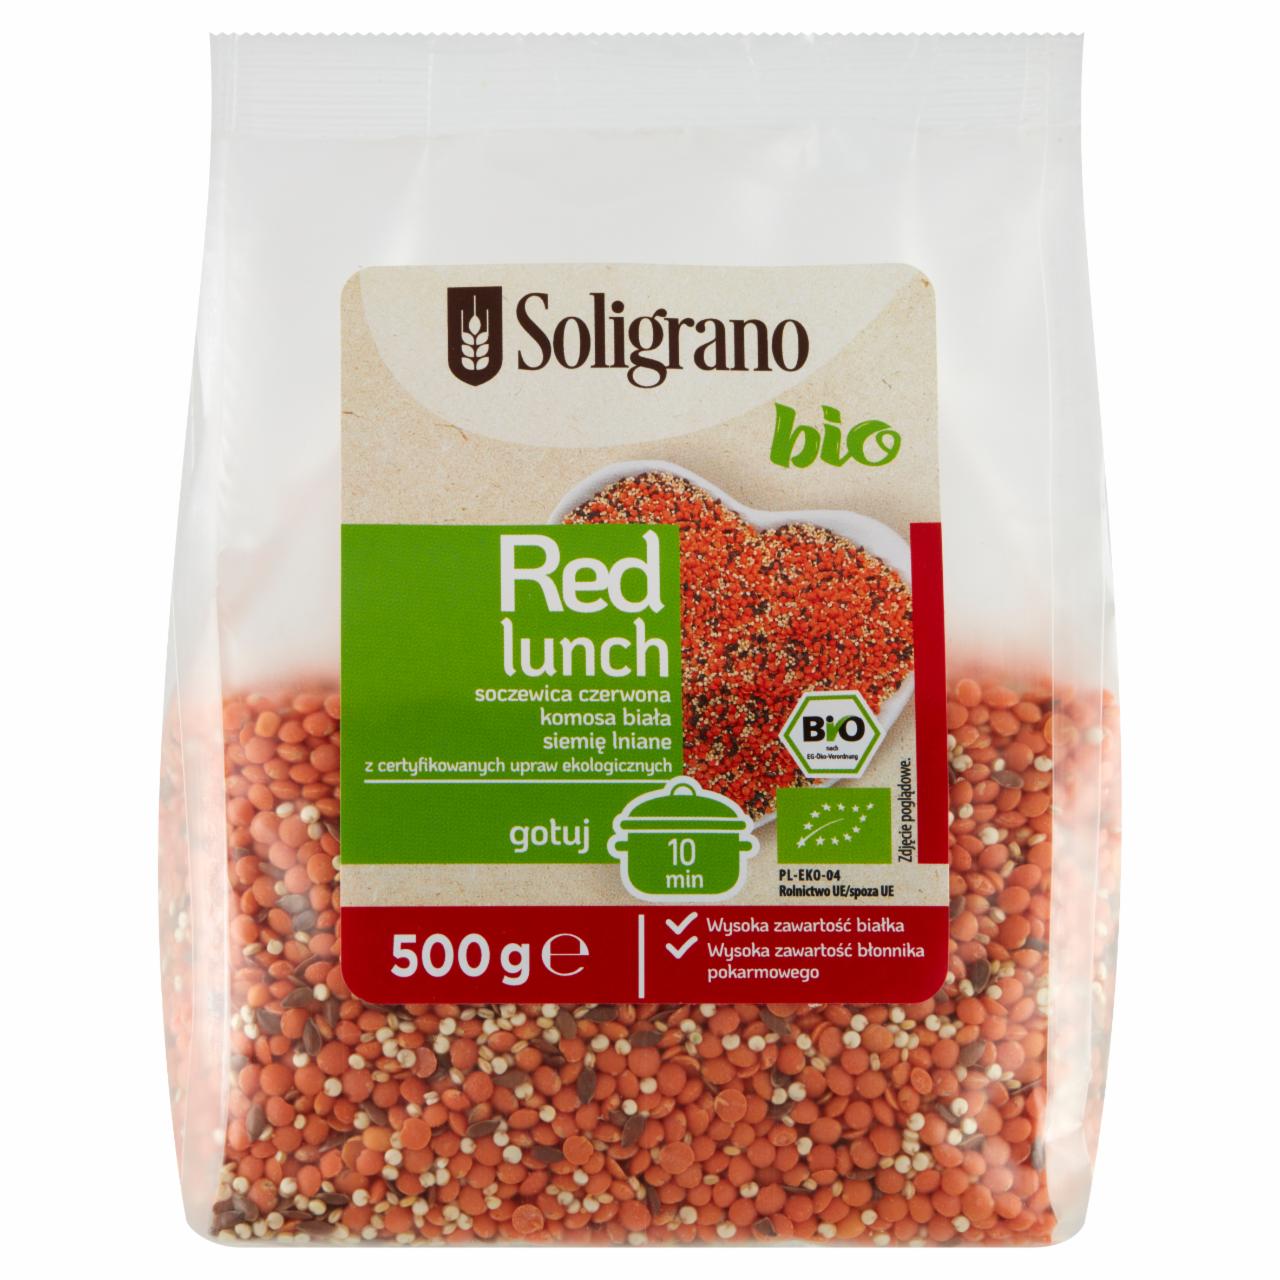 Zdjęcia - Soligrano Bio Red Lunch Soczewica czerwona komosa biała siemię lniane 500 g